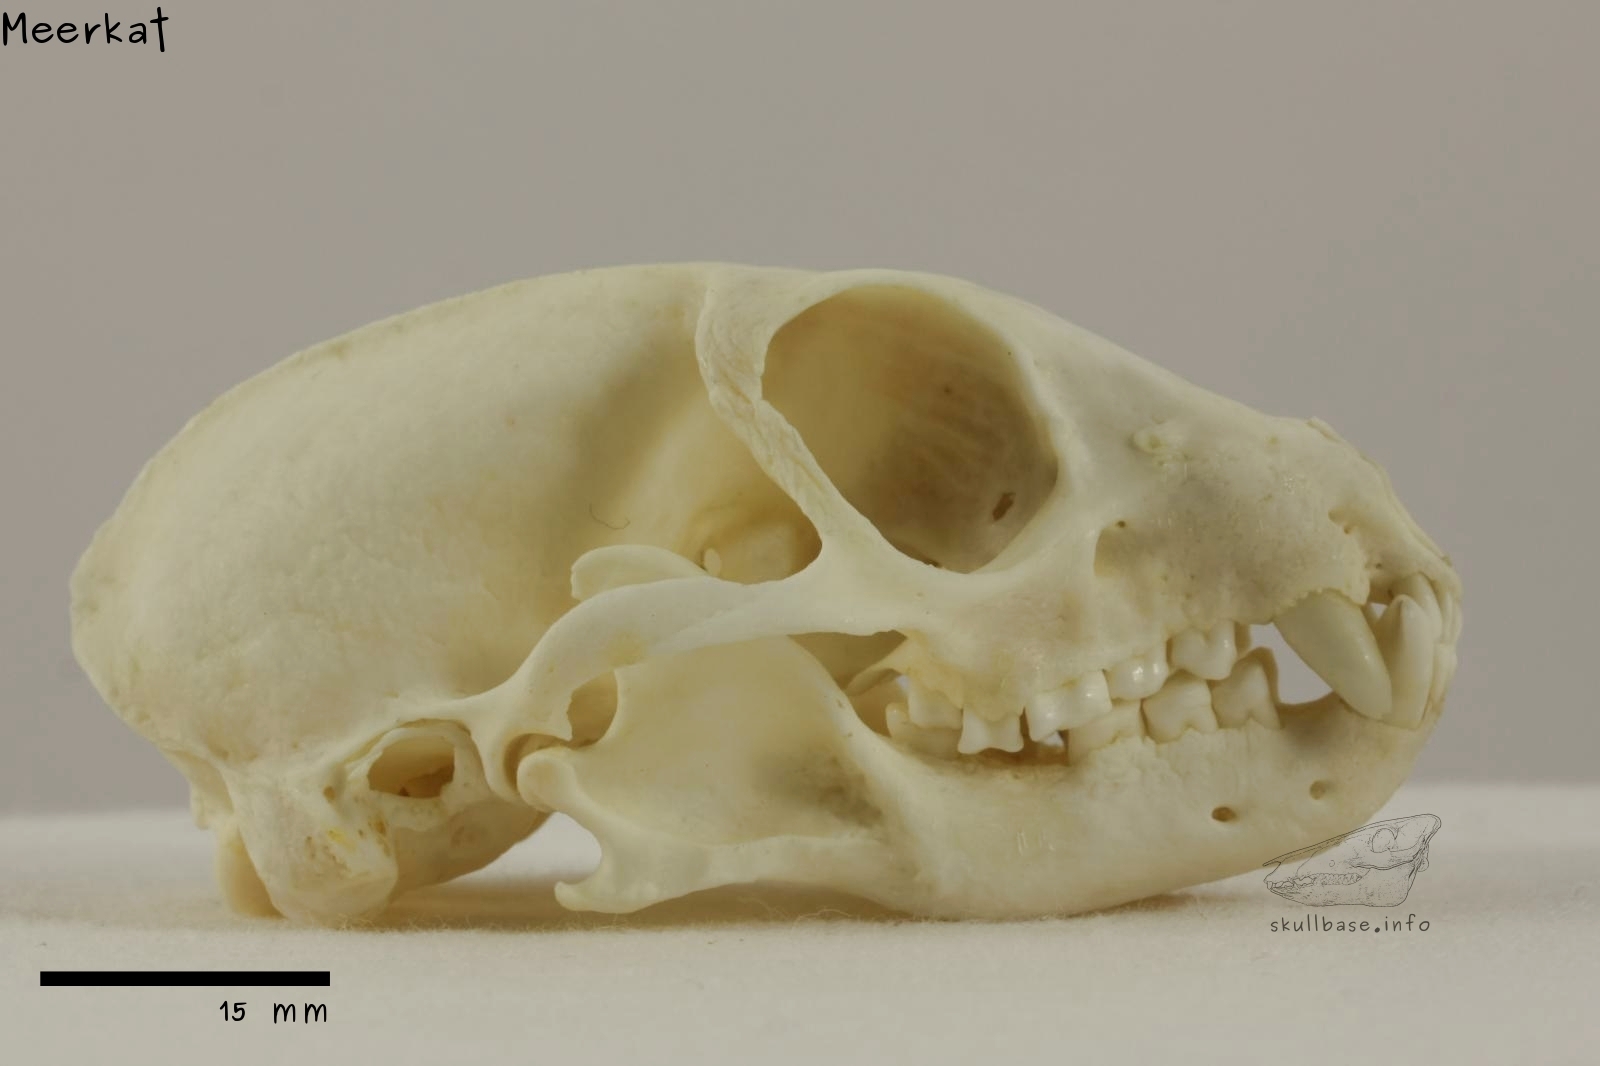 Meerkat (Suricata suricatta) skull lateral view